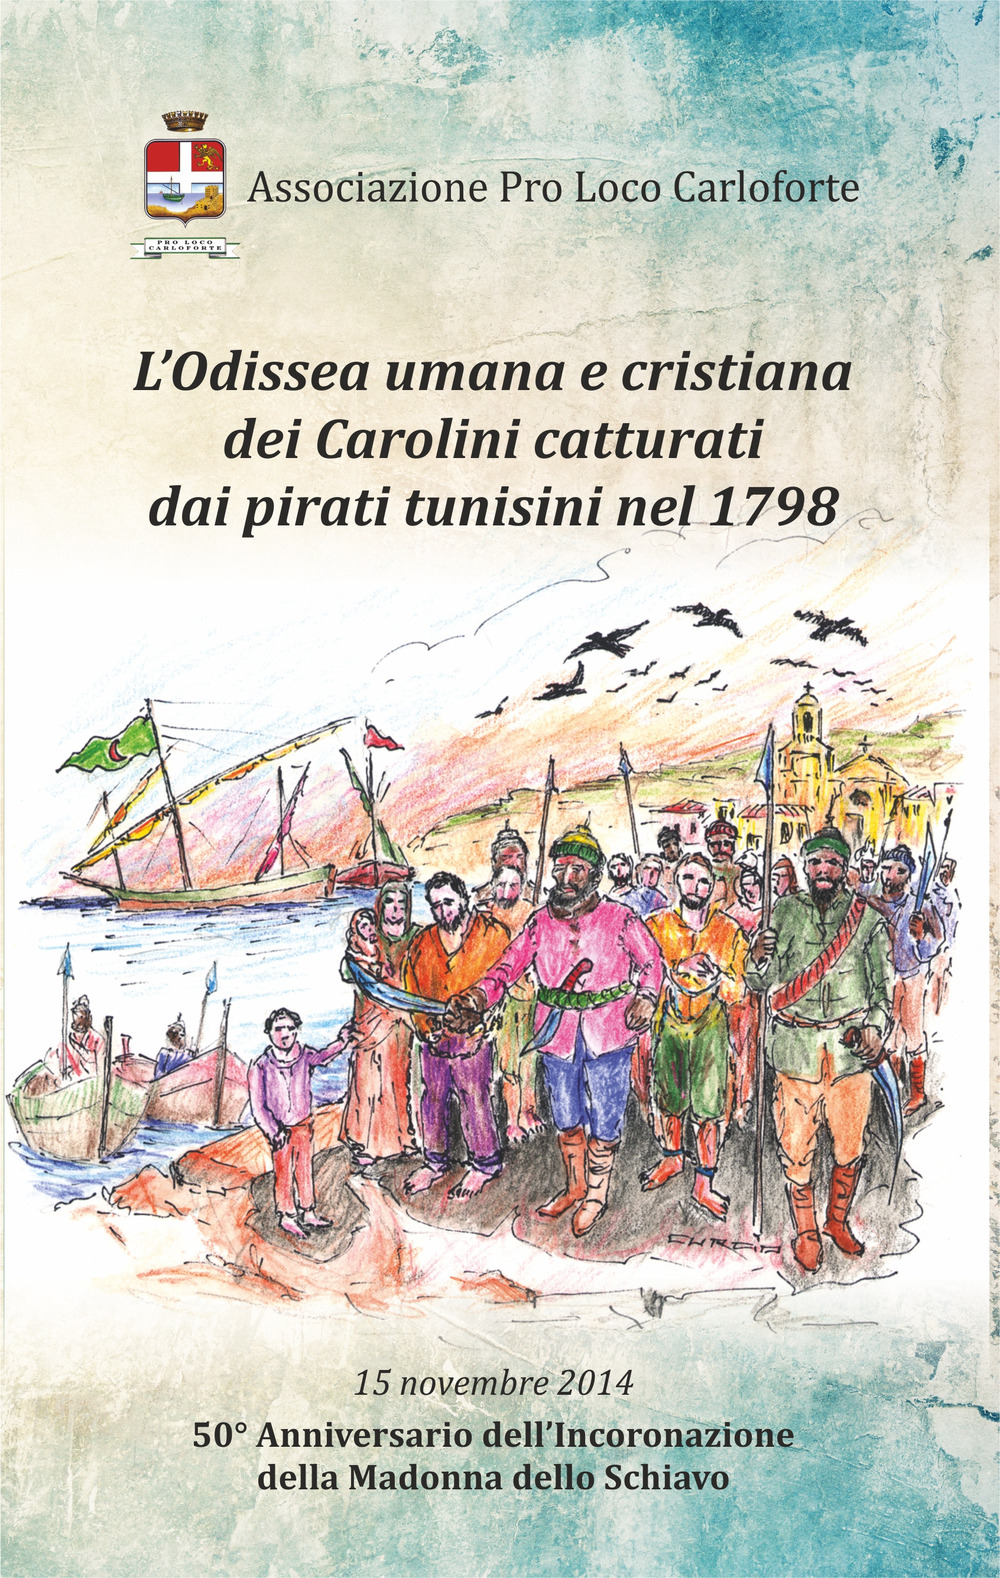 L'odissea umana e cristiana dei carolini catturati dai pirati tunisini nel 1798. 50° anniversario dell'incoronazione della Madonna dello Schiavo